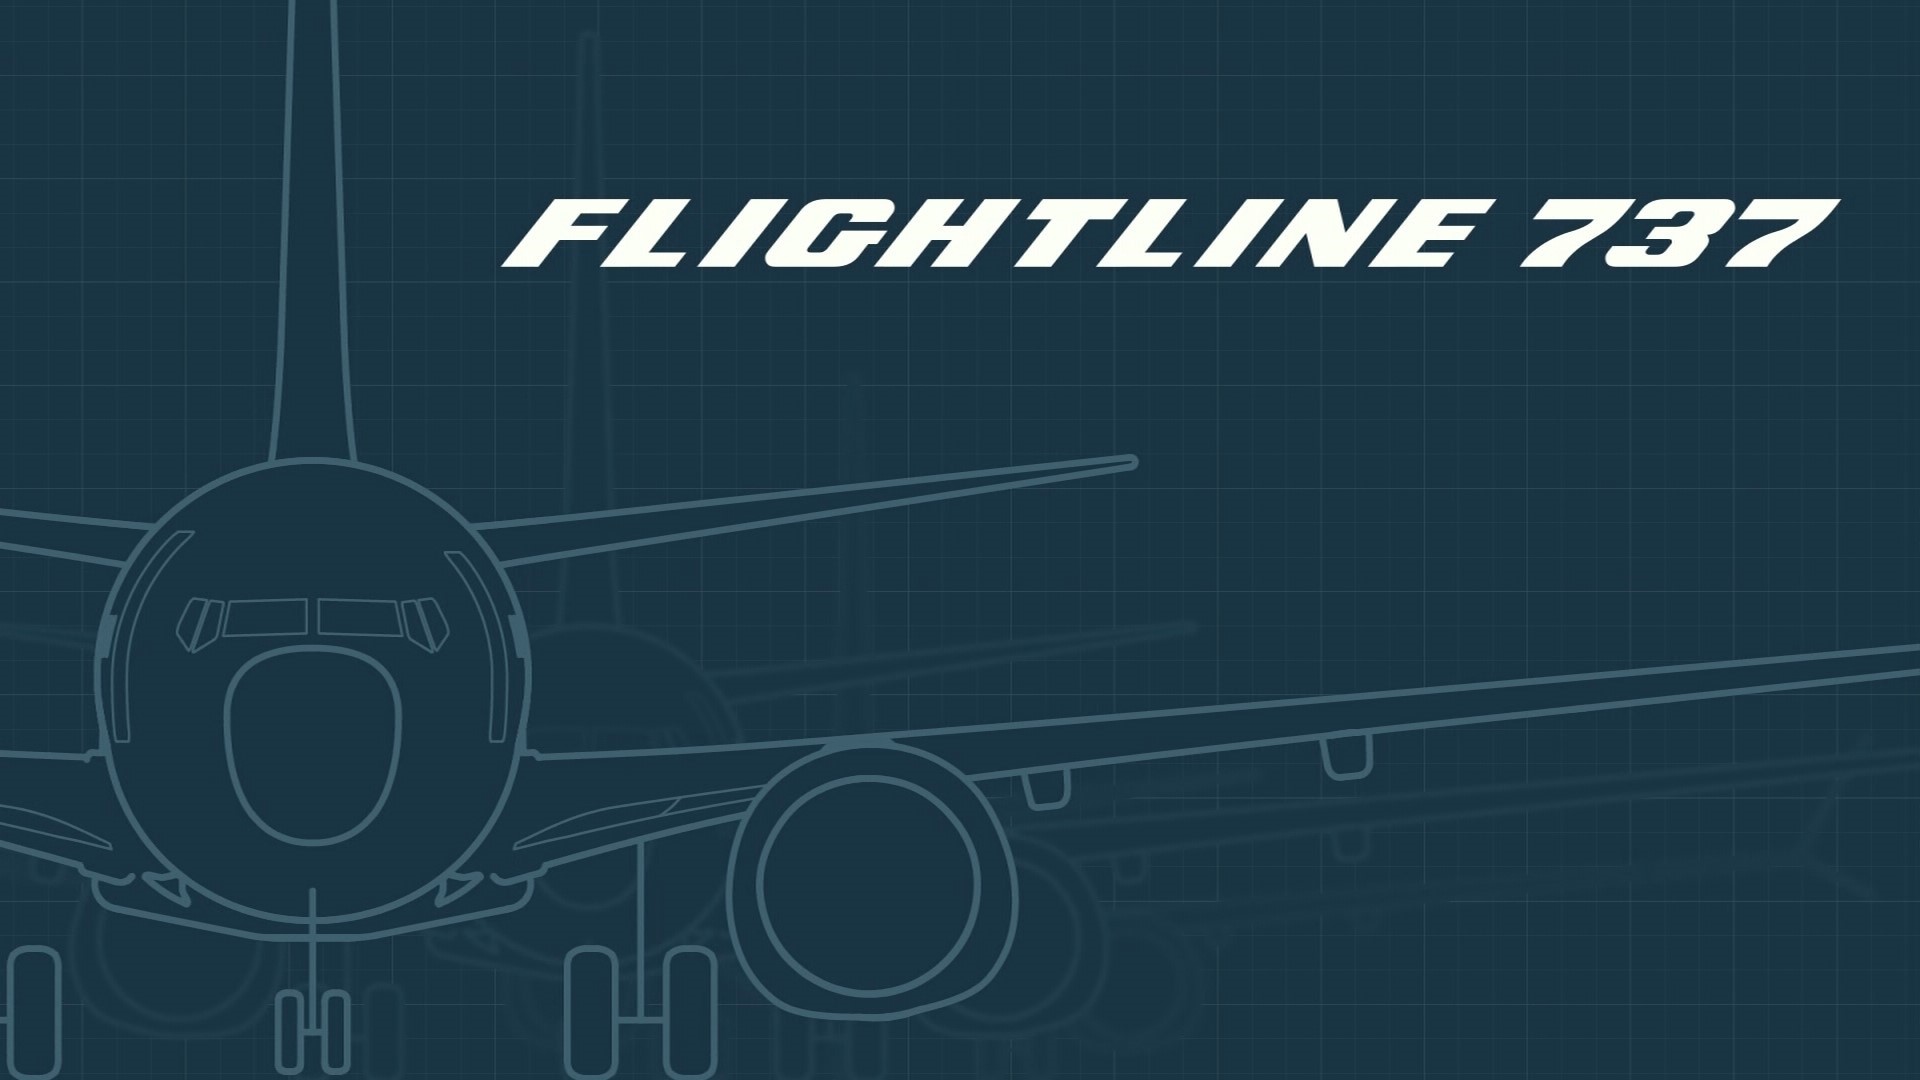 KING 5 aviation expert Glenn Farley runs down the history of Boeing's 737 jet.